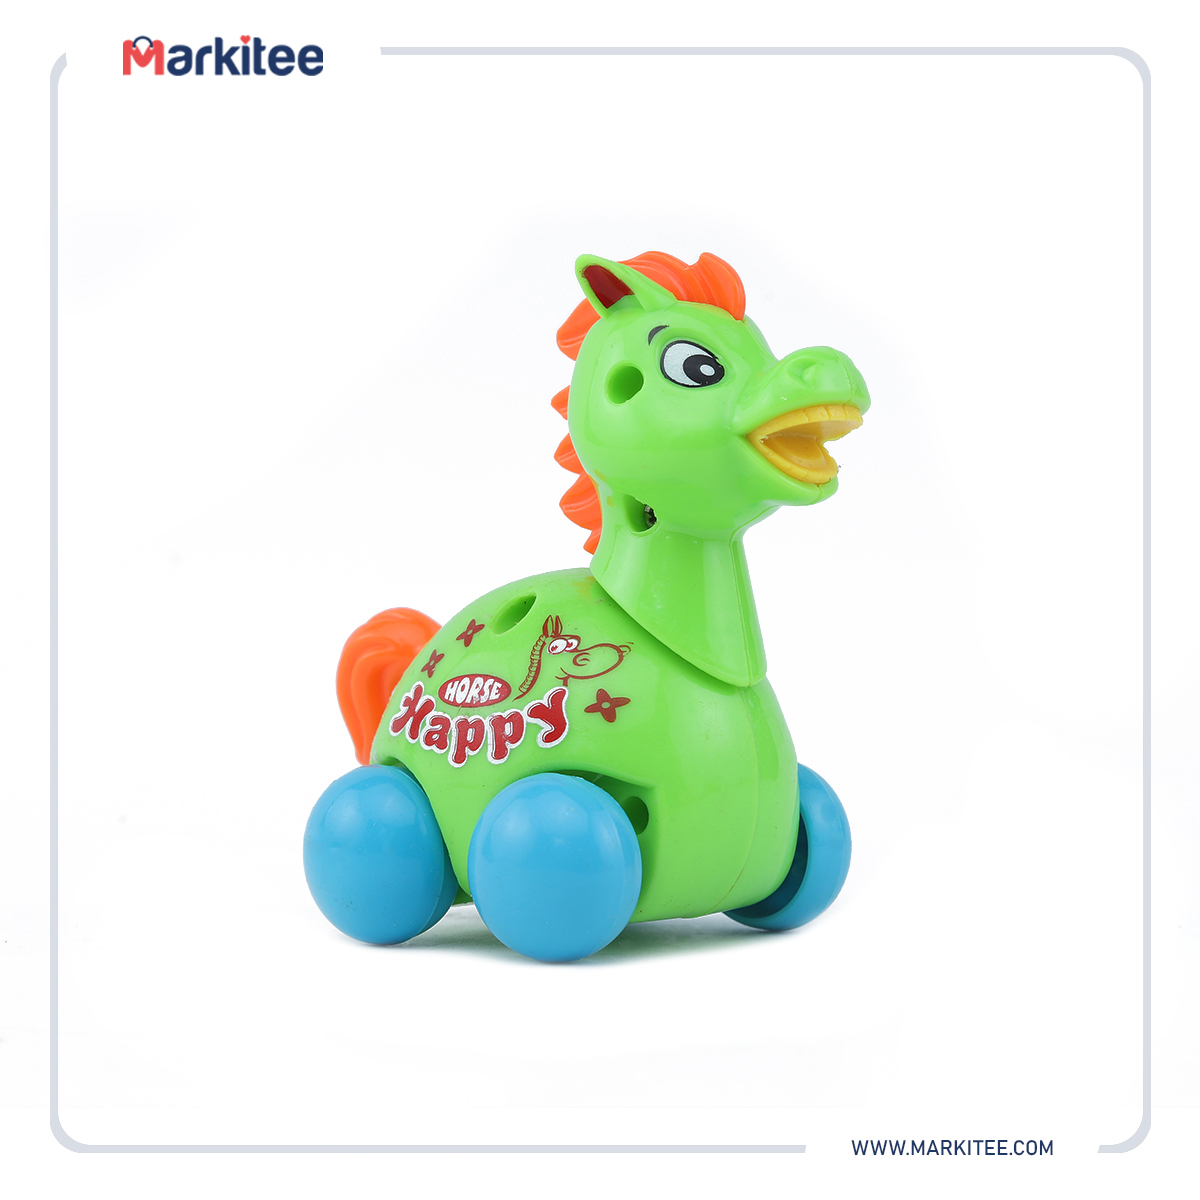 ماركيتي-markitee-20220514073006787_Markitee-Toys-Ty635-8(1).jpg